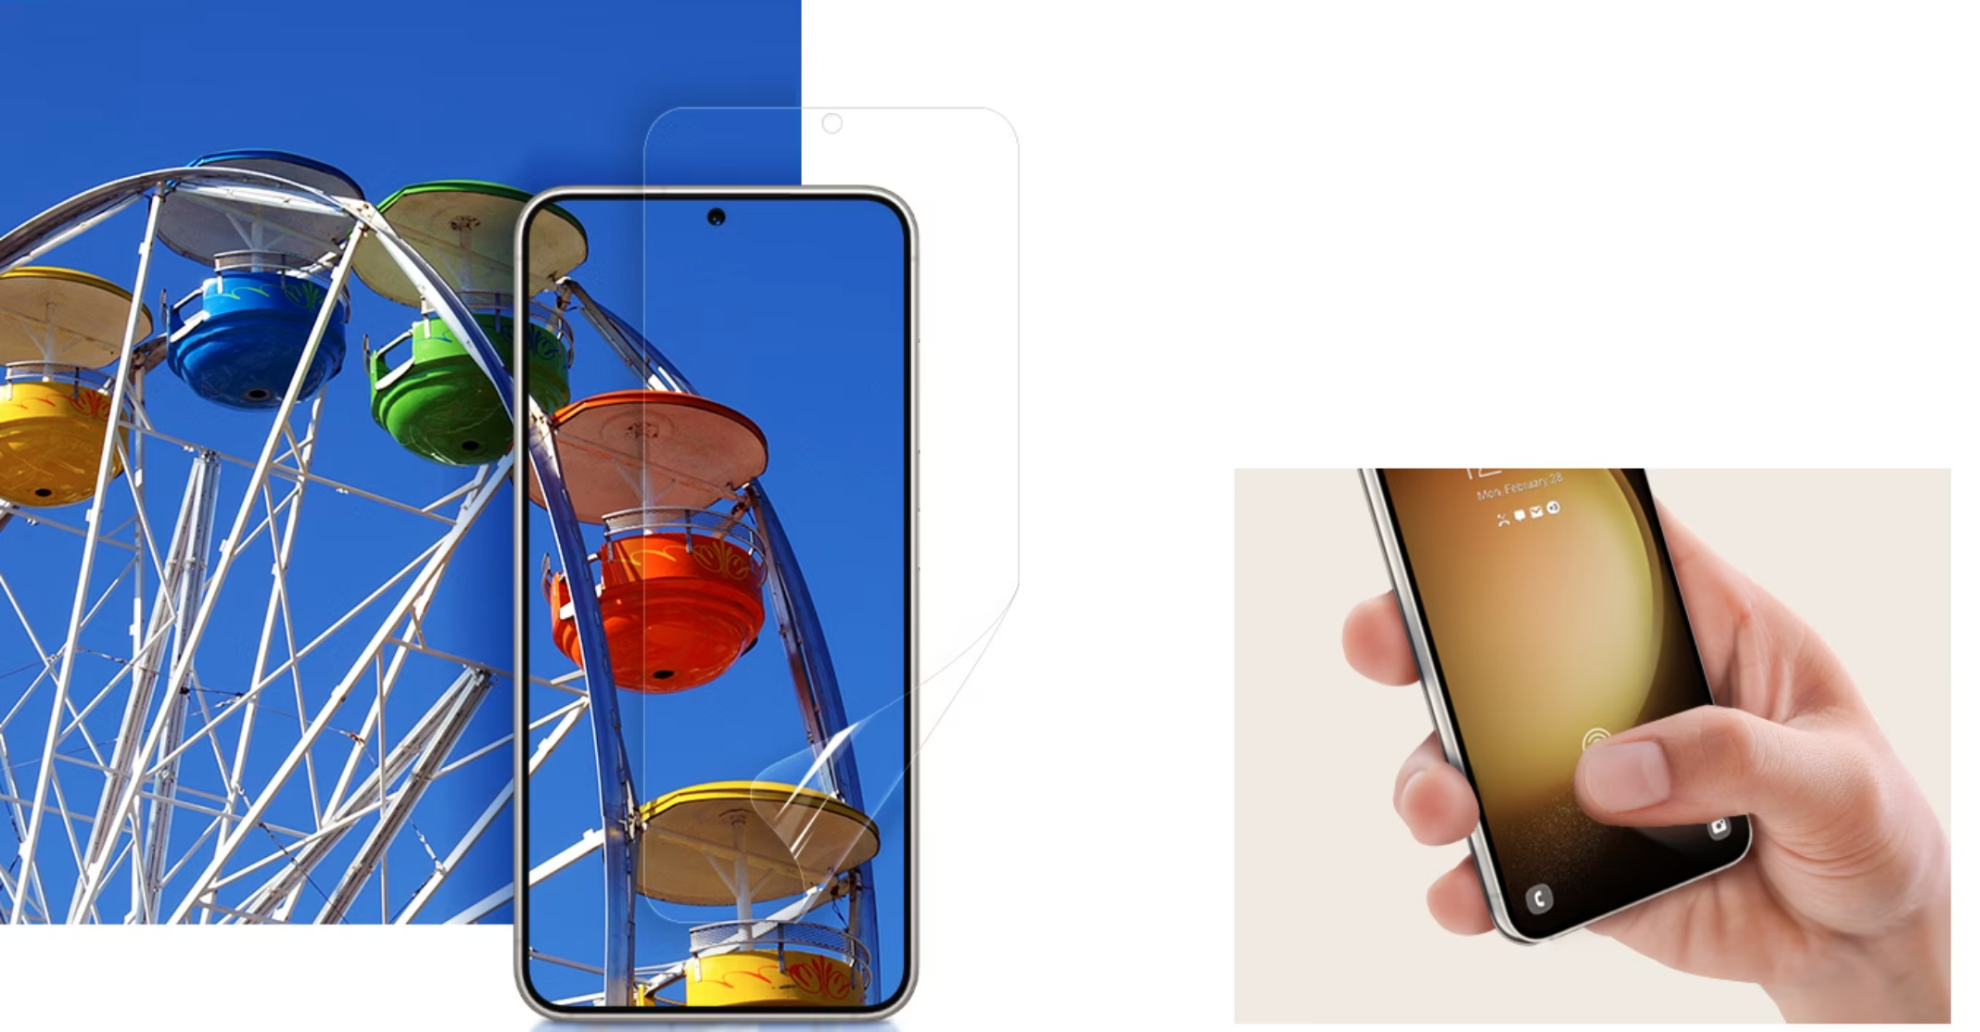 Một bàn tay đang cầm điện thoại có Dán Màn Hình khi ngón tay cái chạm nhẹ vào màn hình để thể hiện độ nhạy cao của miếng dán. Một chiếc điện thoại Galaxy S23 có Dán Màn Hình được đặt trên một bức tranh đầy màu sắc có thể nhìn thấy rõ qua thiết bị như nhìn thấy qua kính.